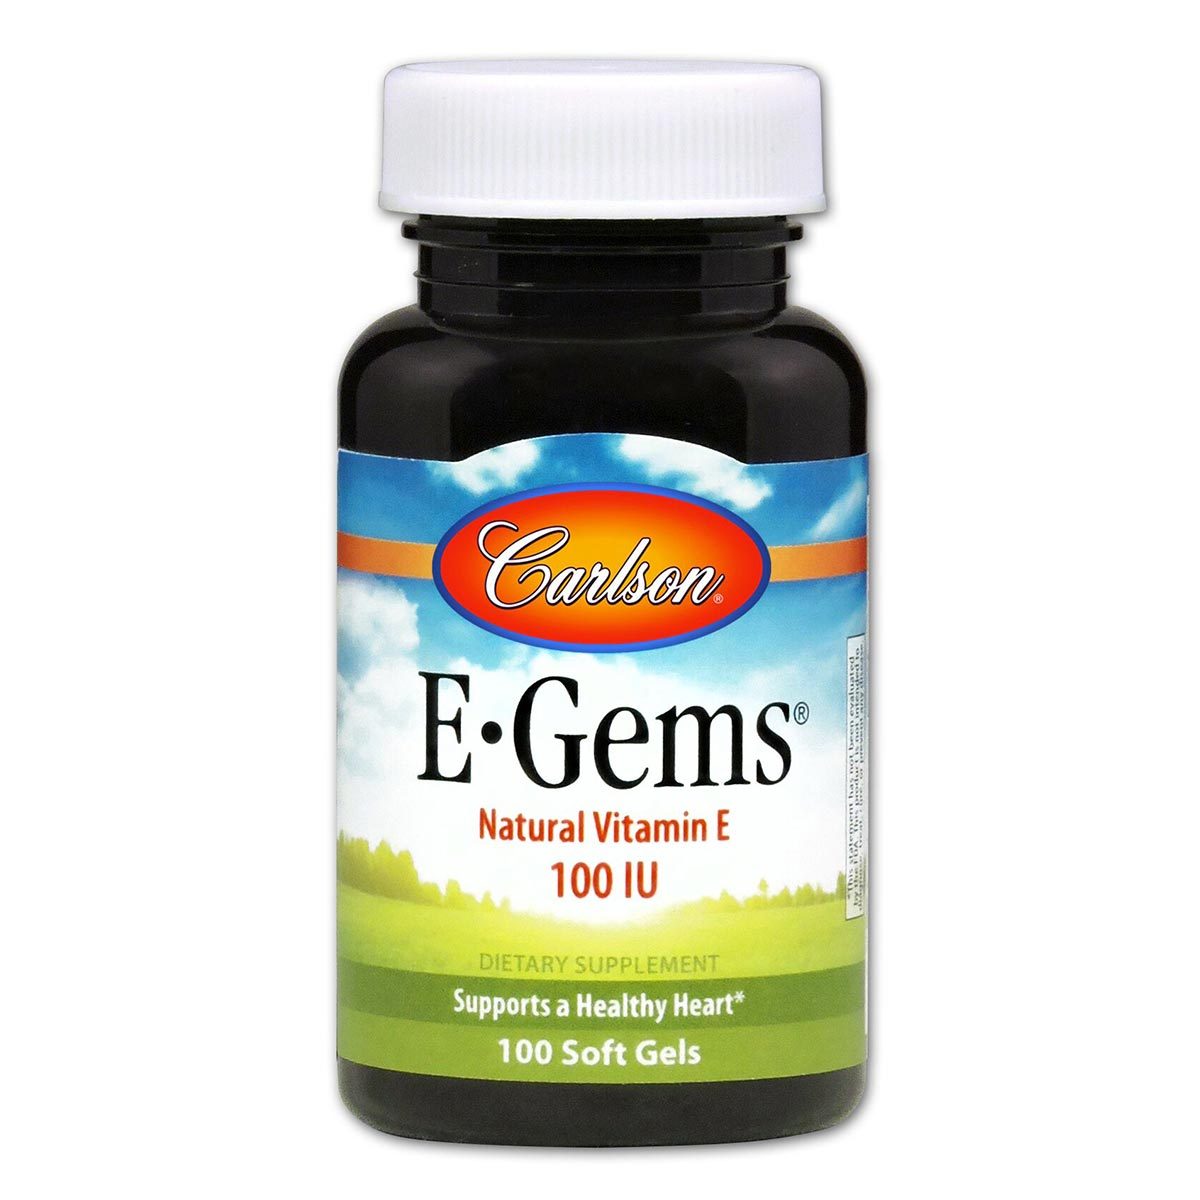 Primary image of E Gems 100IU